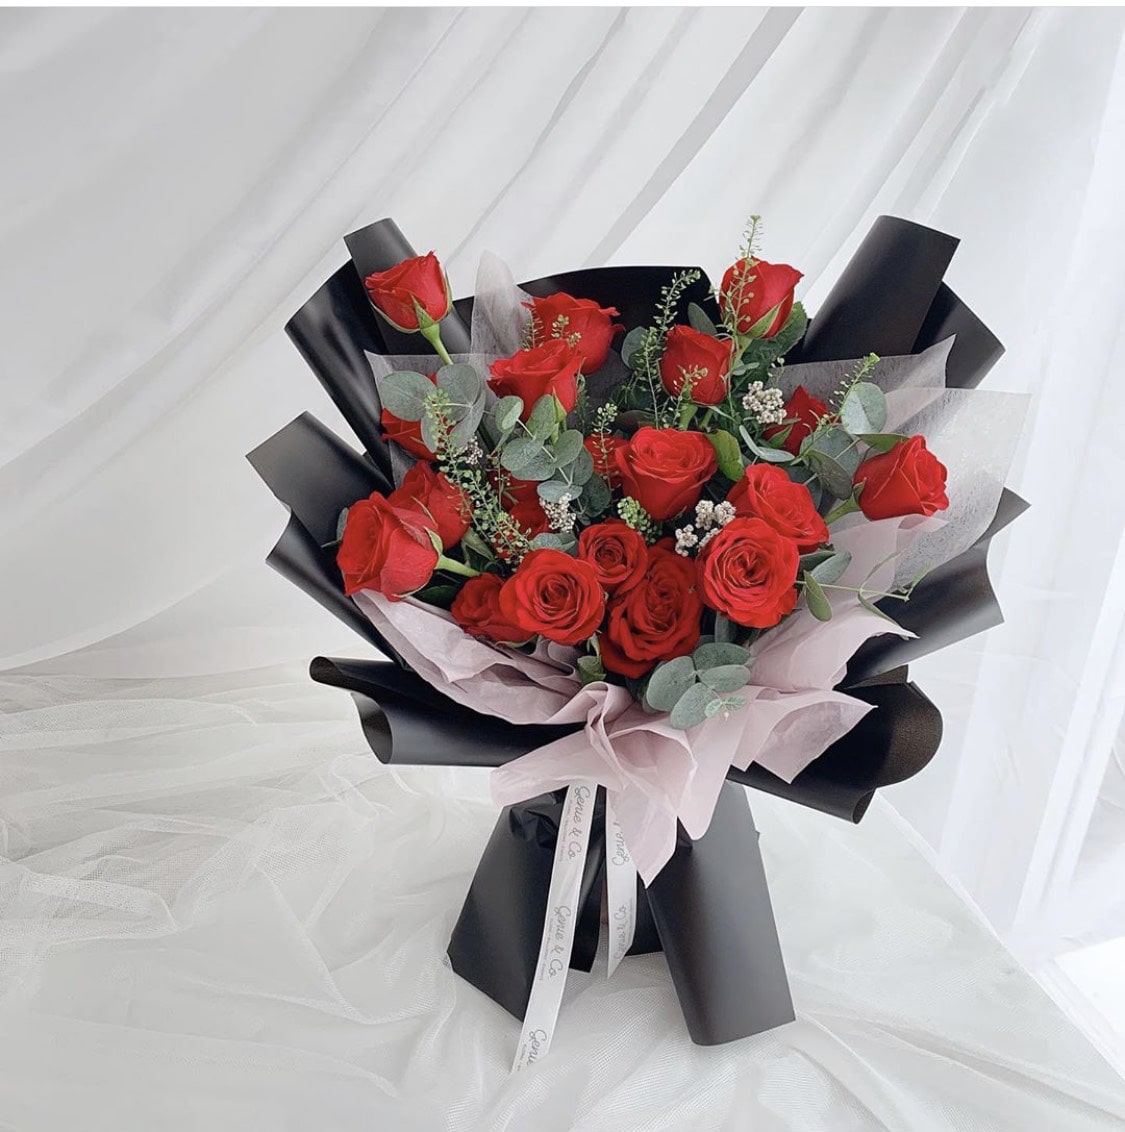 Bó hoa hồng tặng người phụ nữ yêu thương trong ngày 20 tháng 10